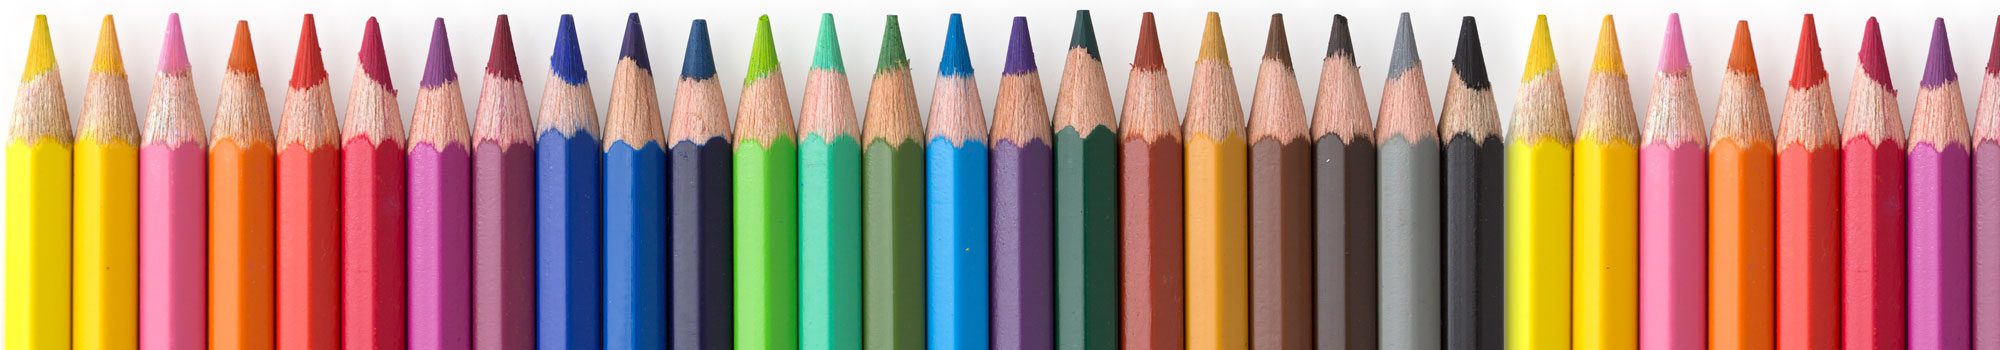 Color Pencils in a line